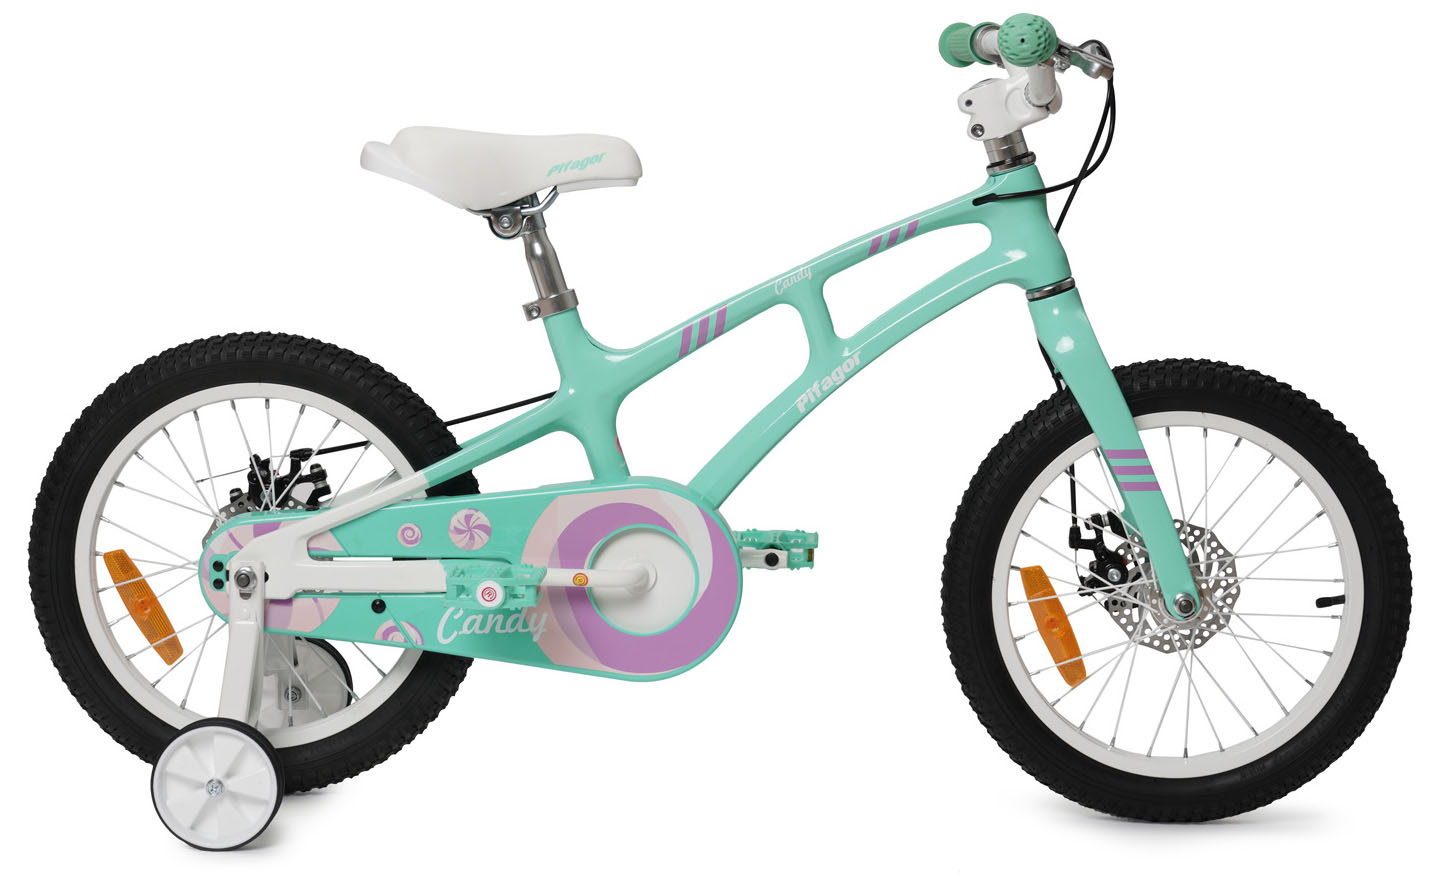  Отзывы о Детском велосипеде Pifagor Candy 16 2019